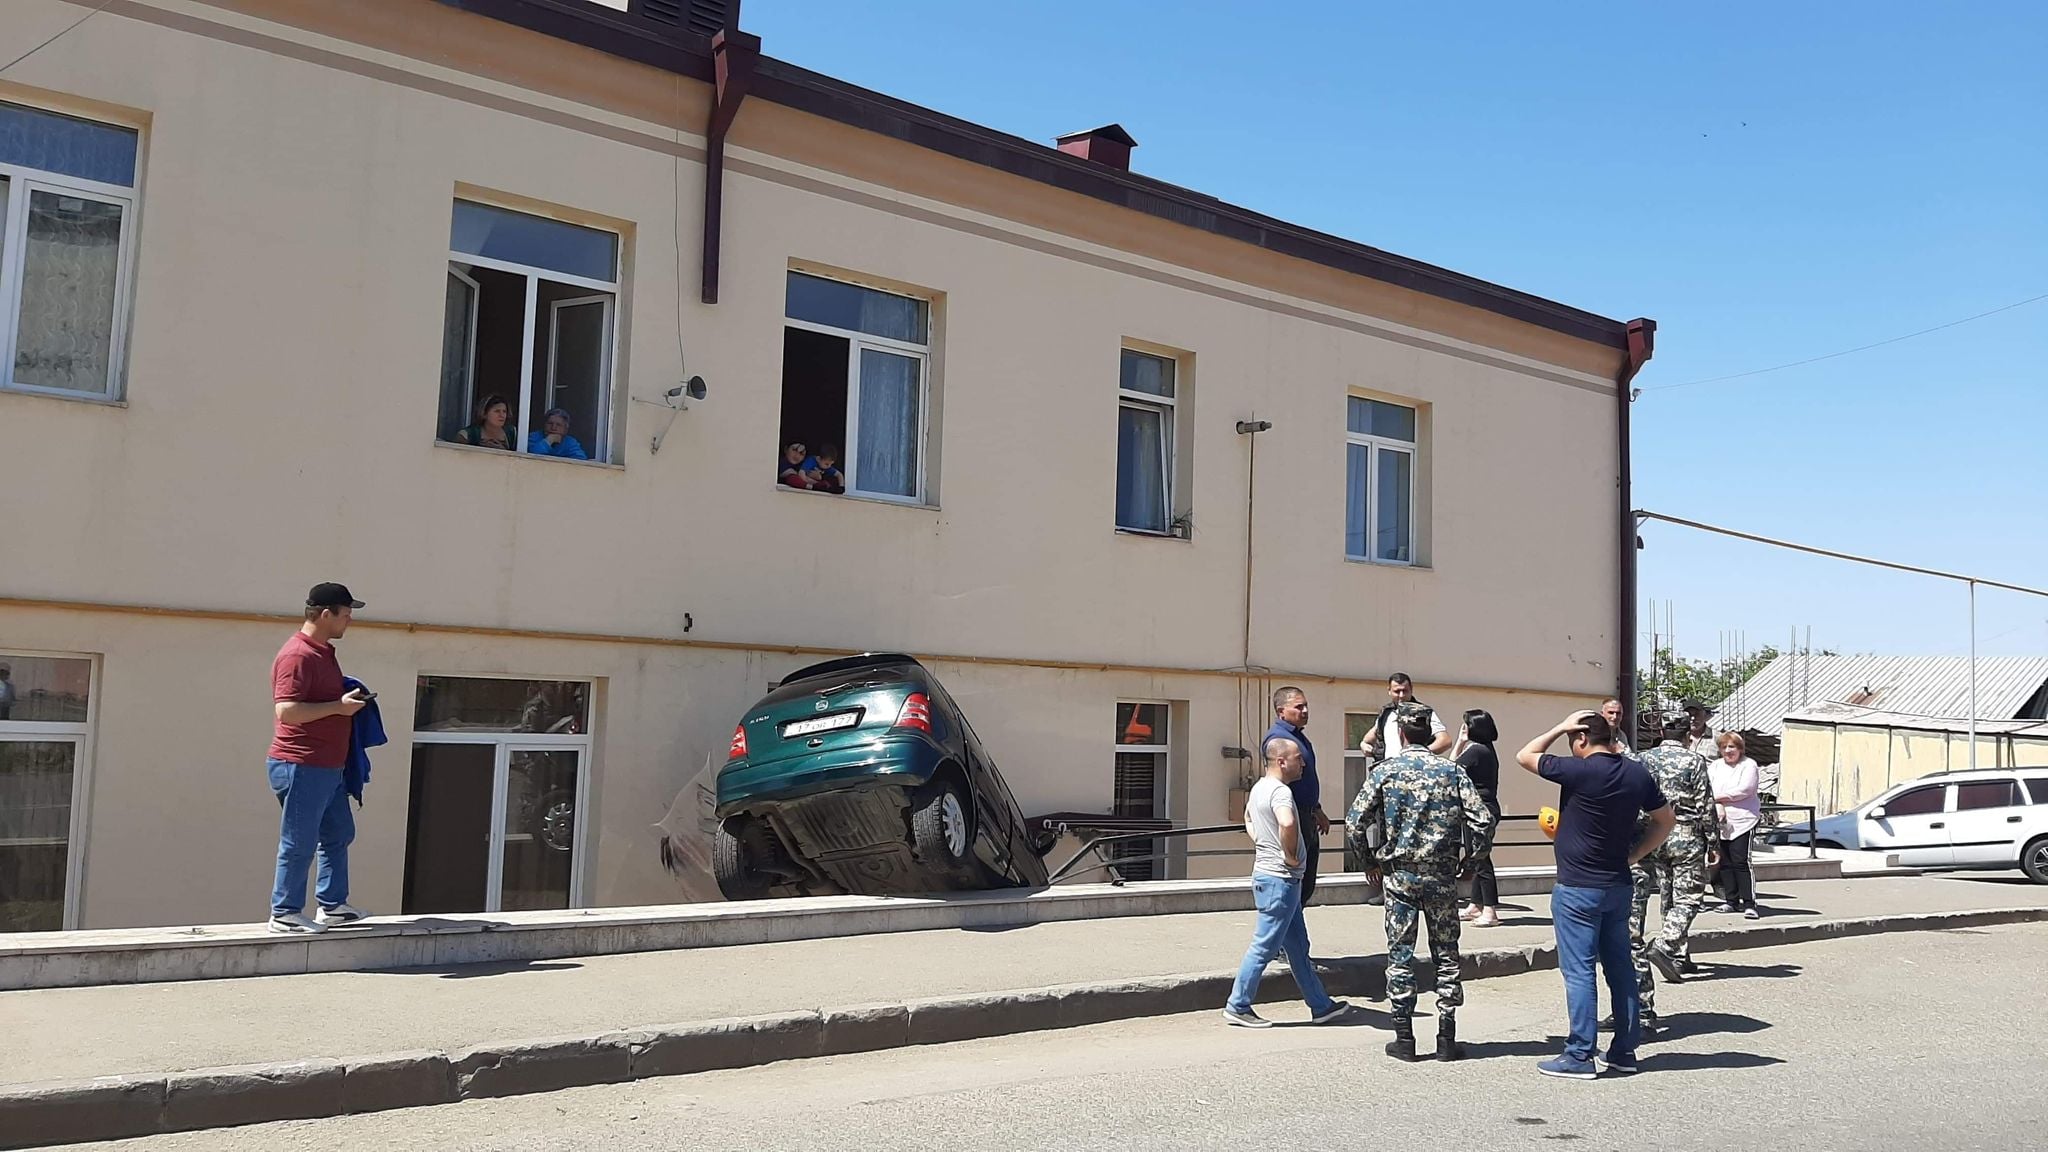 ՃՏՊ Ստեփանակերտում. տուժածներ չկան (լուսանկարներ)